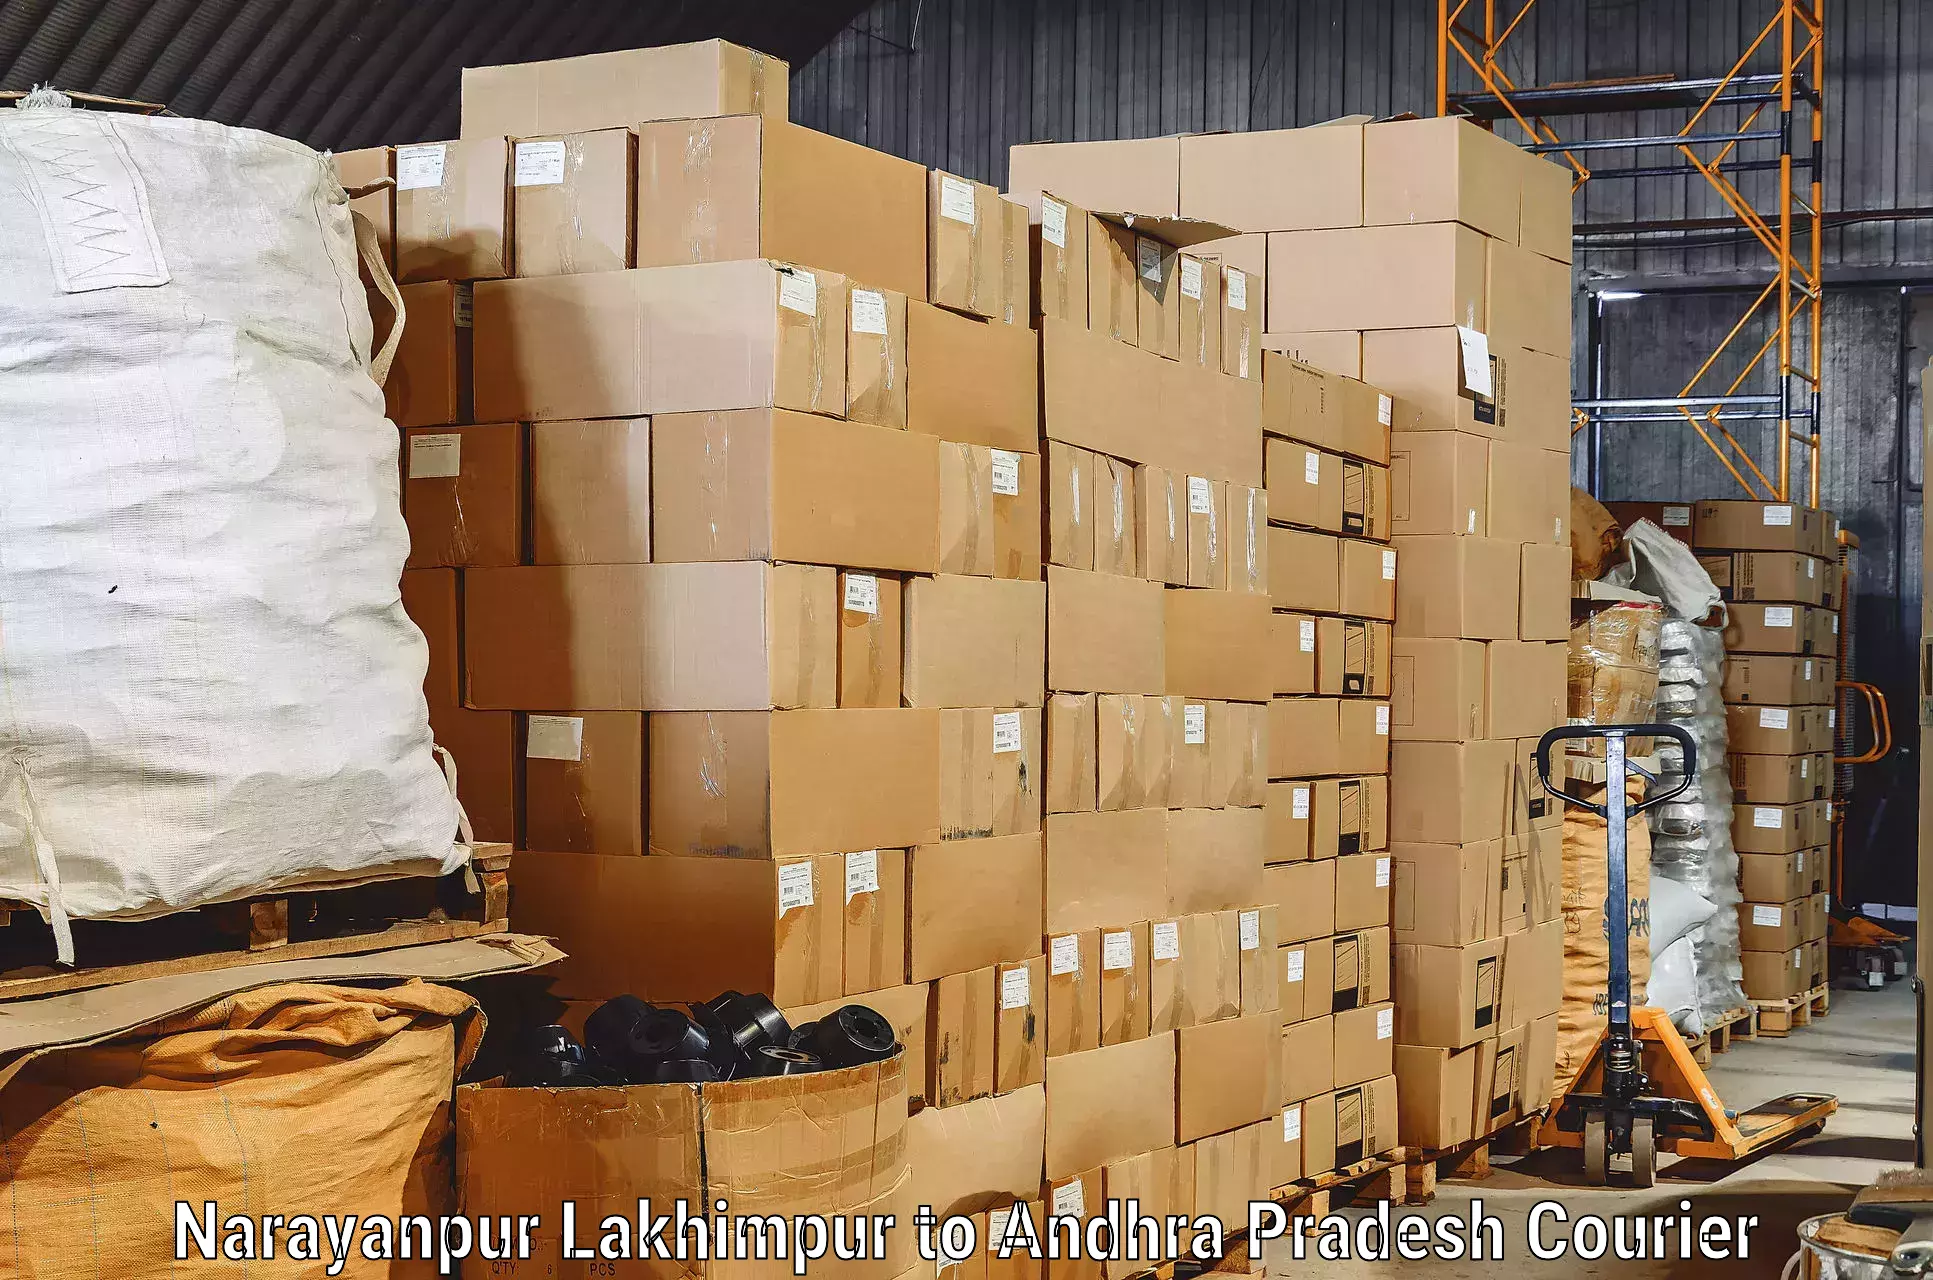 Skilled furniture transporters Narayanpur Lakhimpur to Markapur